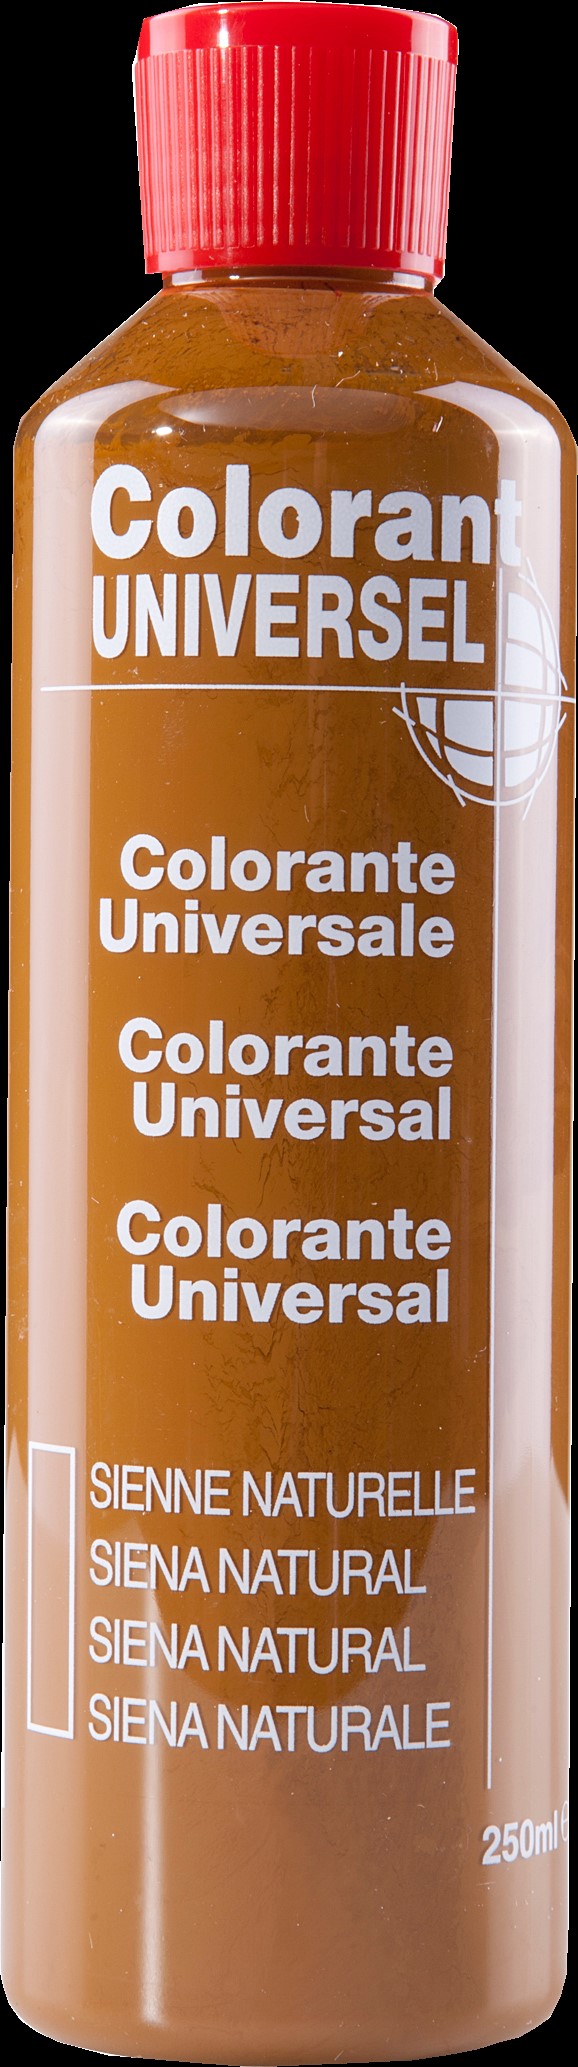 Colorant universel pour peinture sienne naturelle 250ml